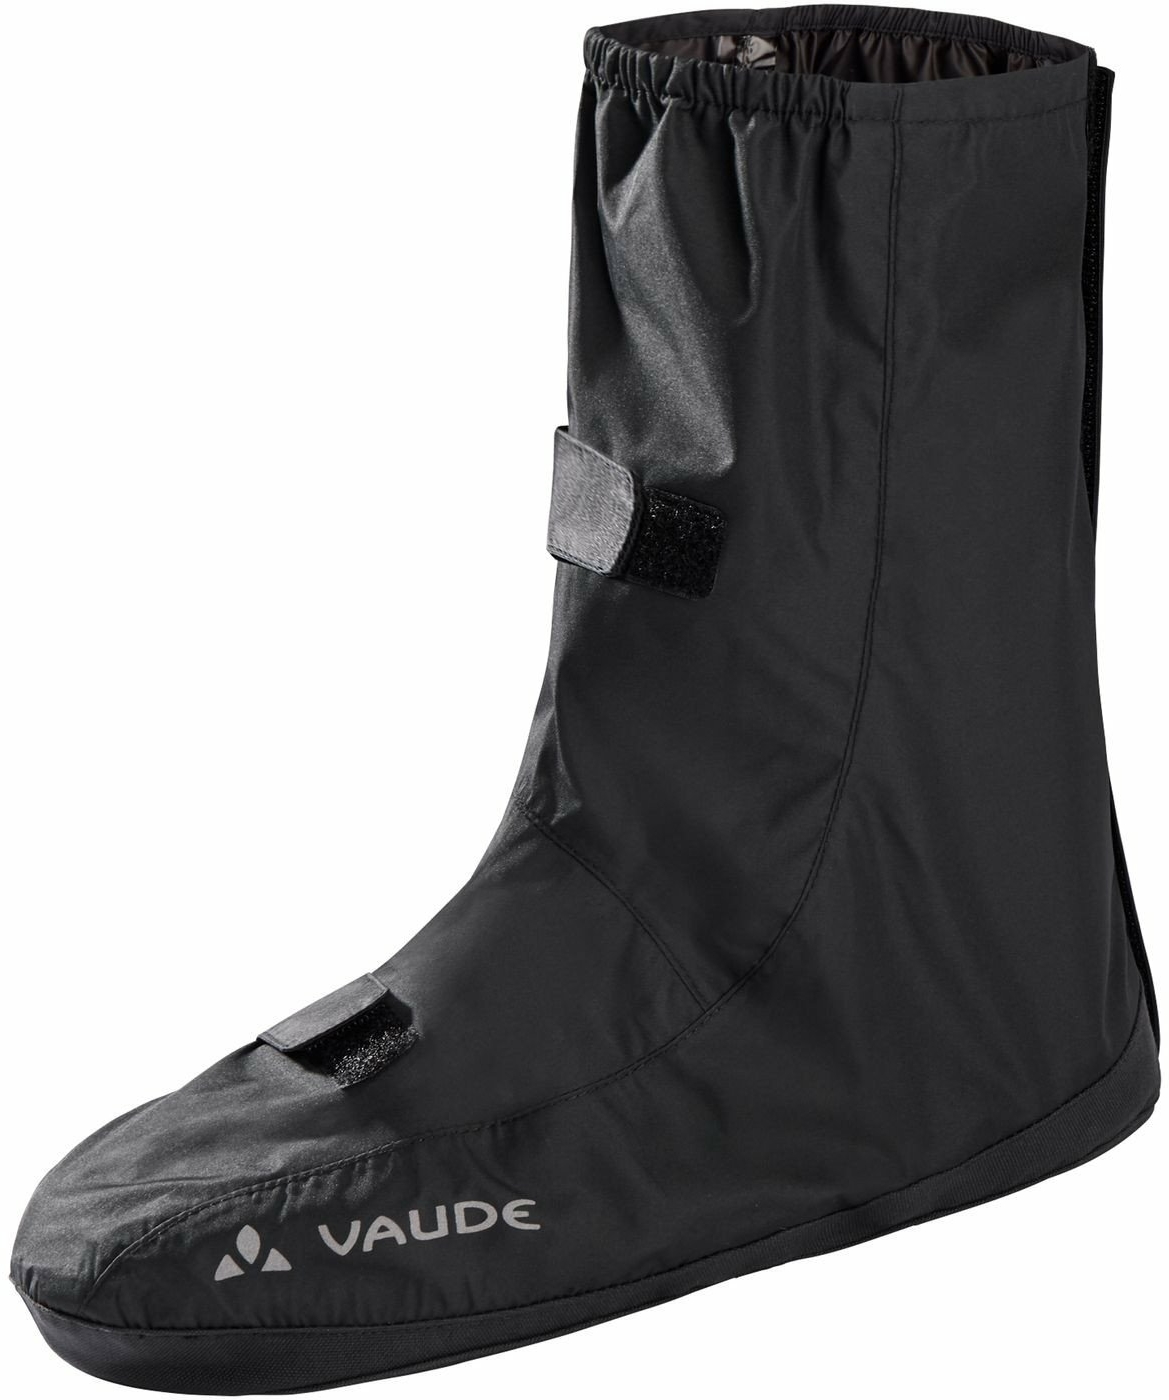 Bekleidung/Schuhe: Vaude VAUDE Wasserdichter und leichter Überschuh für den Alltagseinsatz Shoecover Palade 40-43 